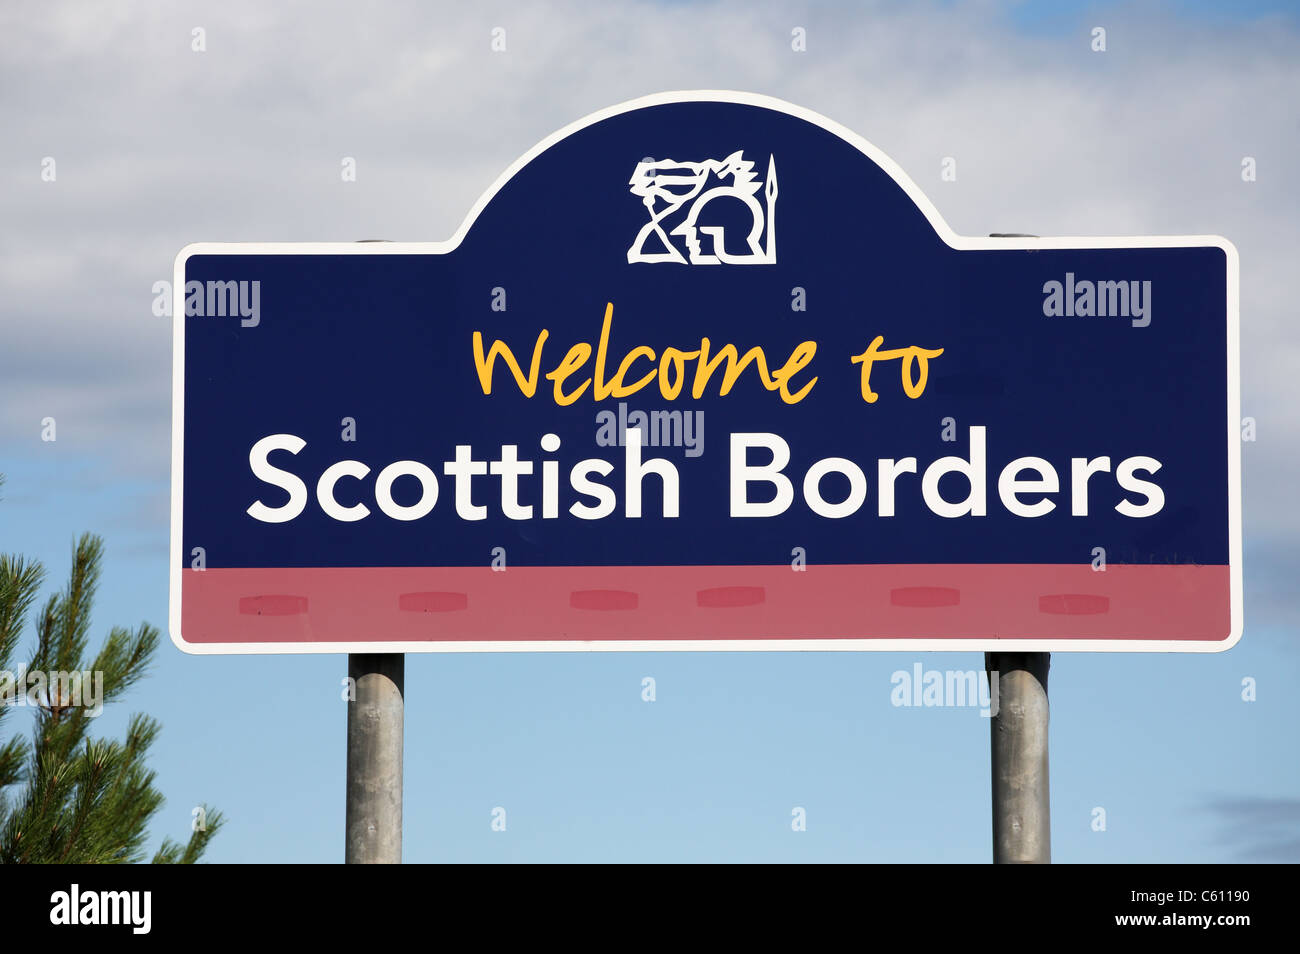 Herzlich Willkommen Sie Schild an der schottischen Grenze bei "Lamberton" A1 unterwegs. Berwickshire, Schottland, Vereinigtes Königreich Stockfoto